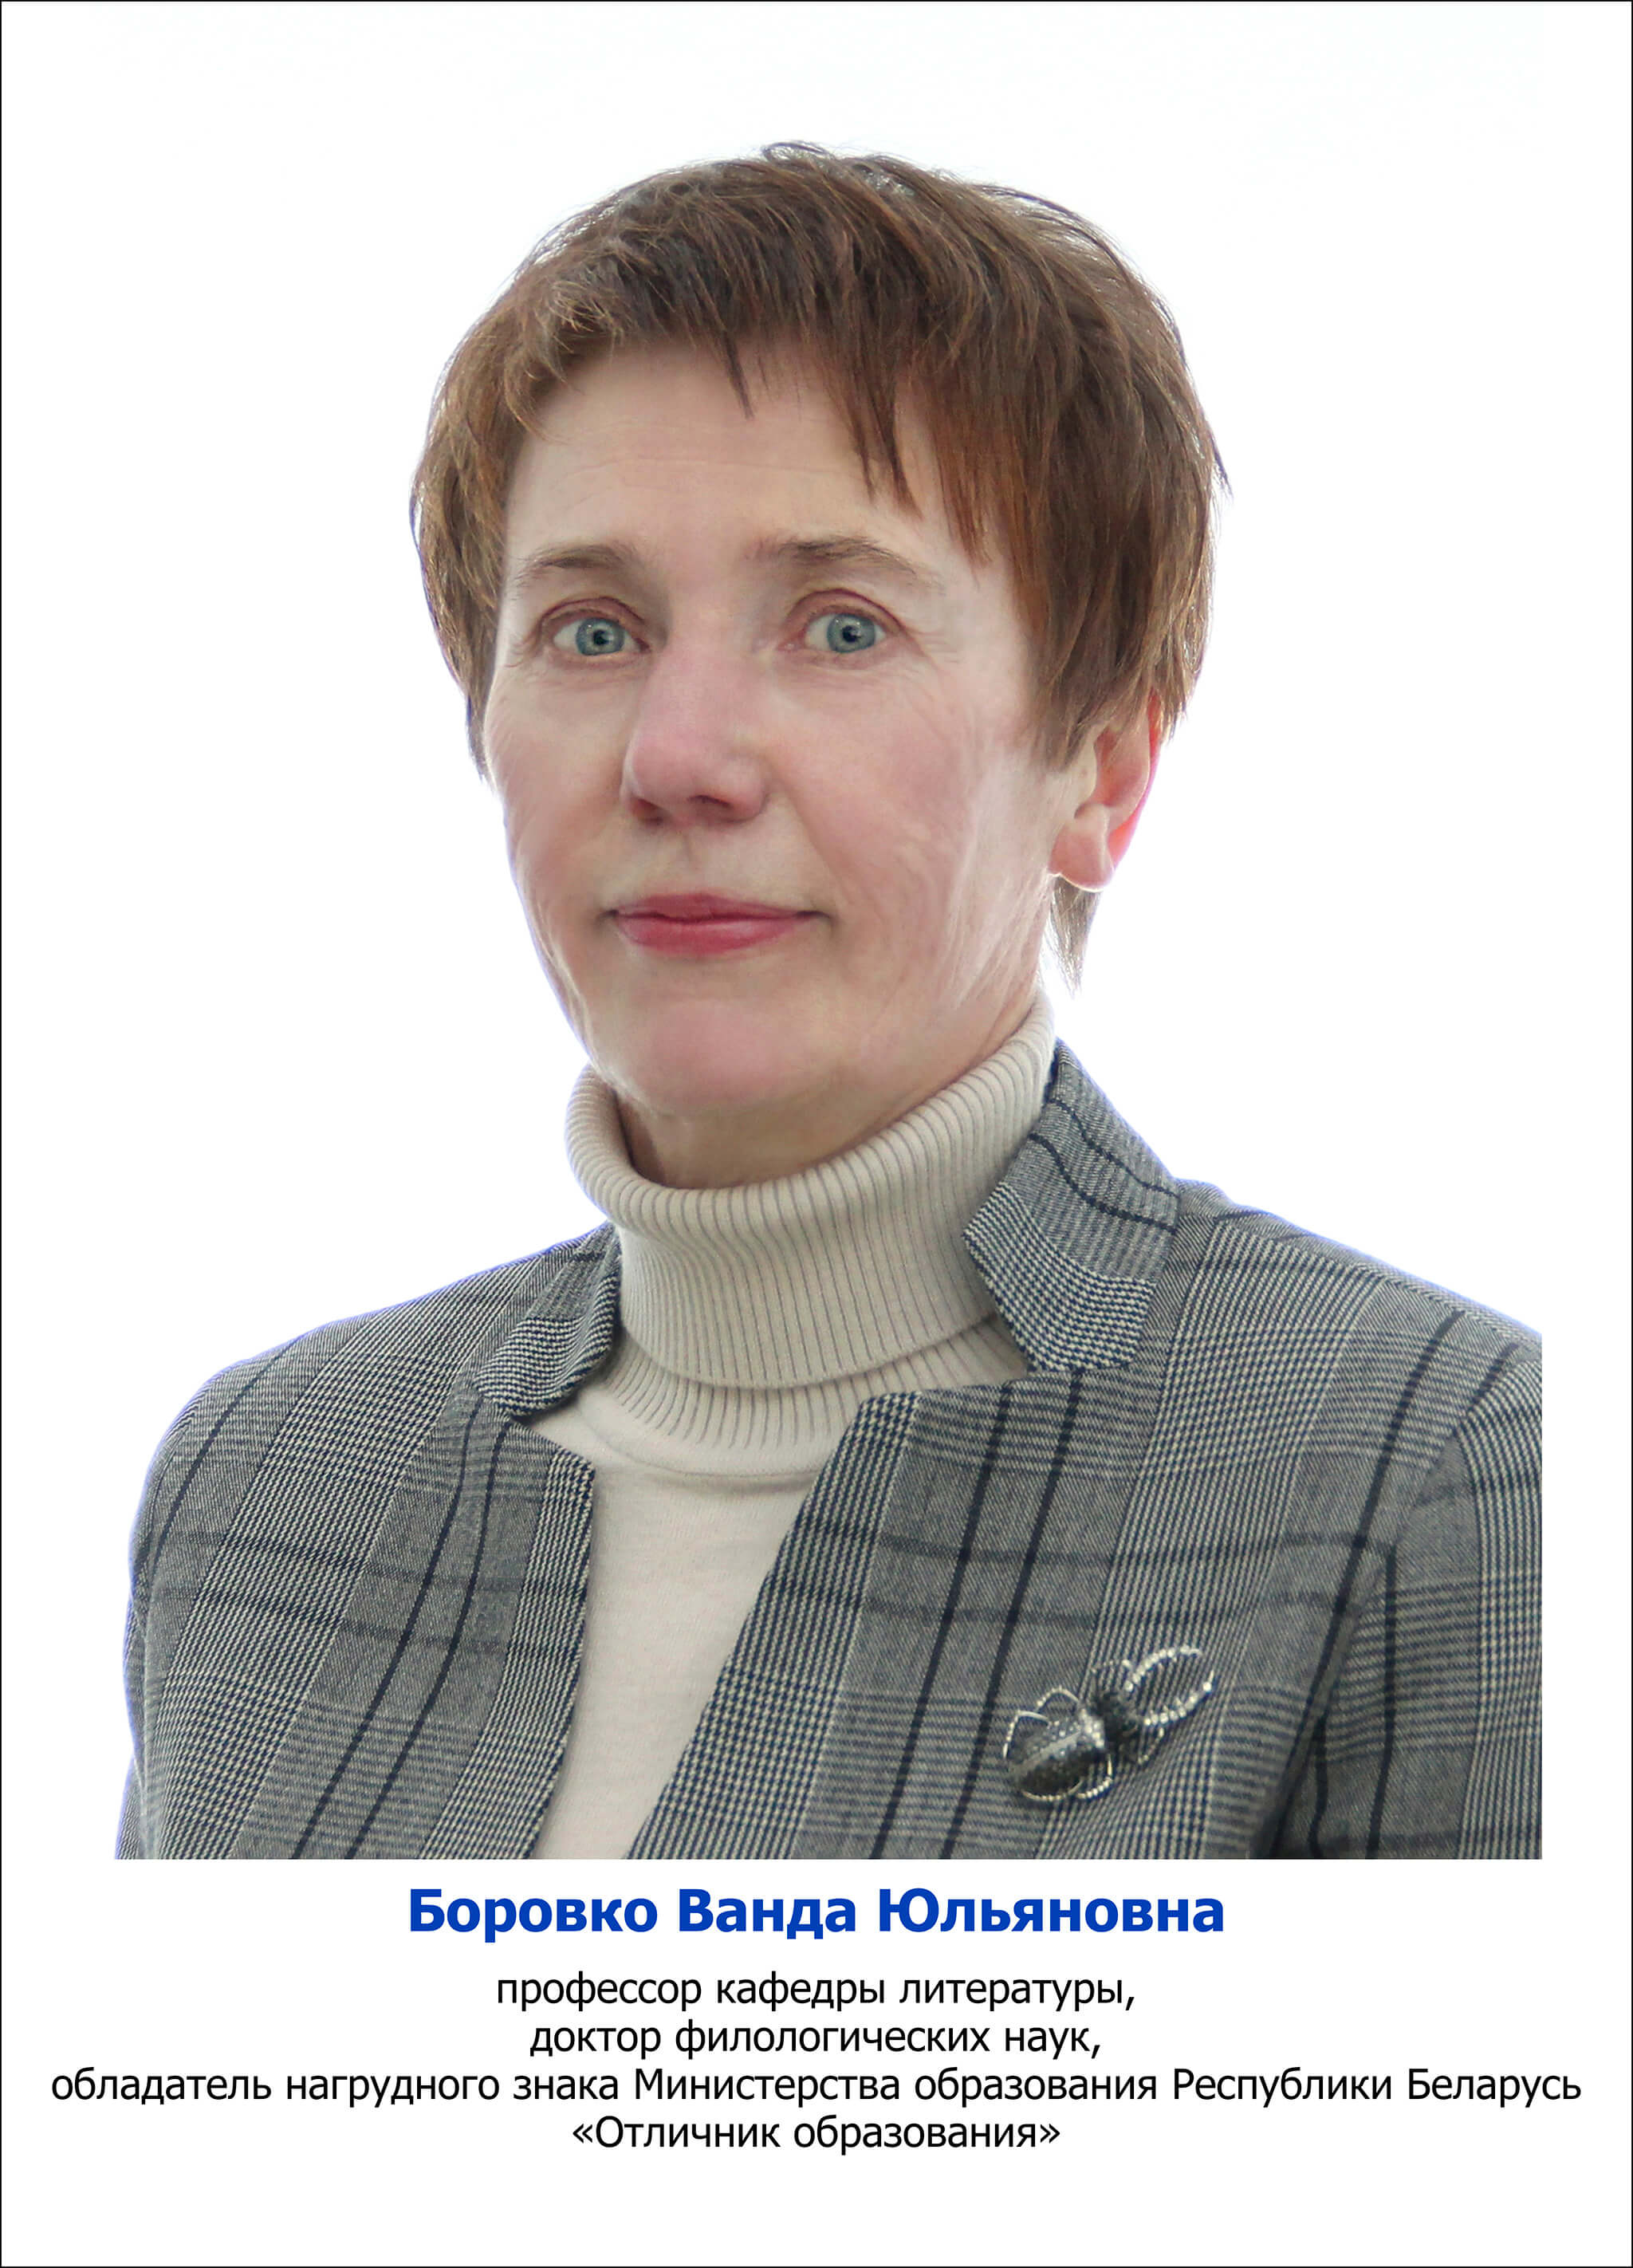 Боровко Ванда Юльяновна